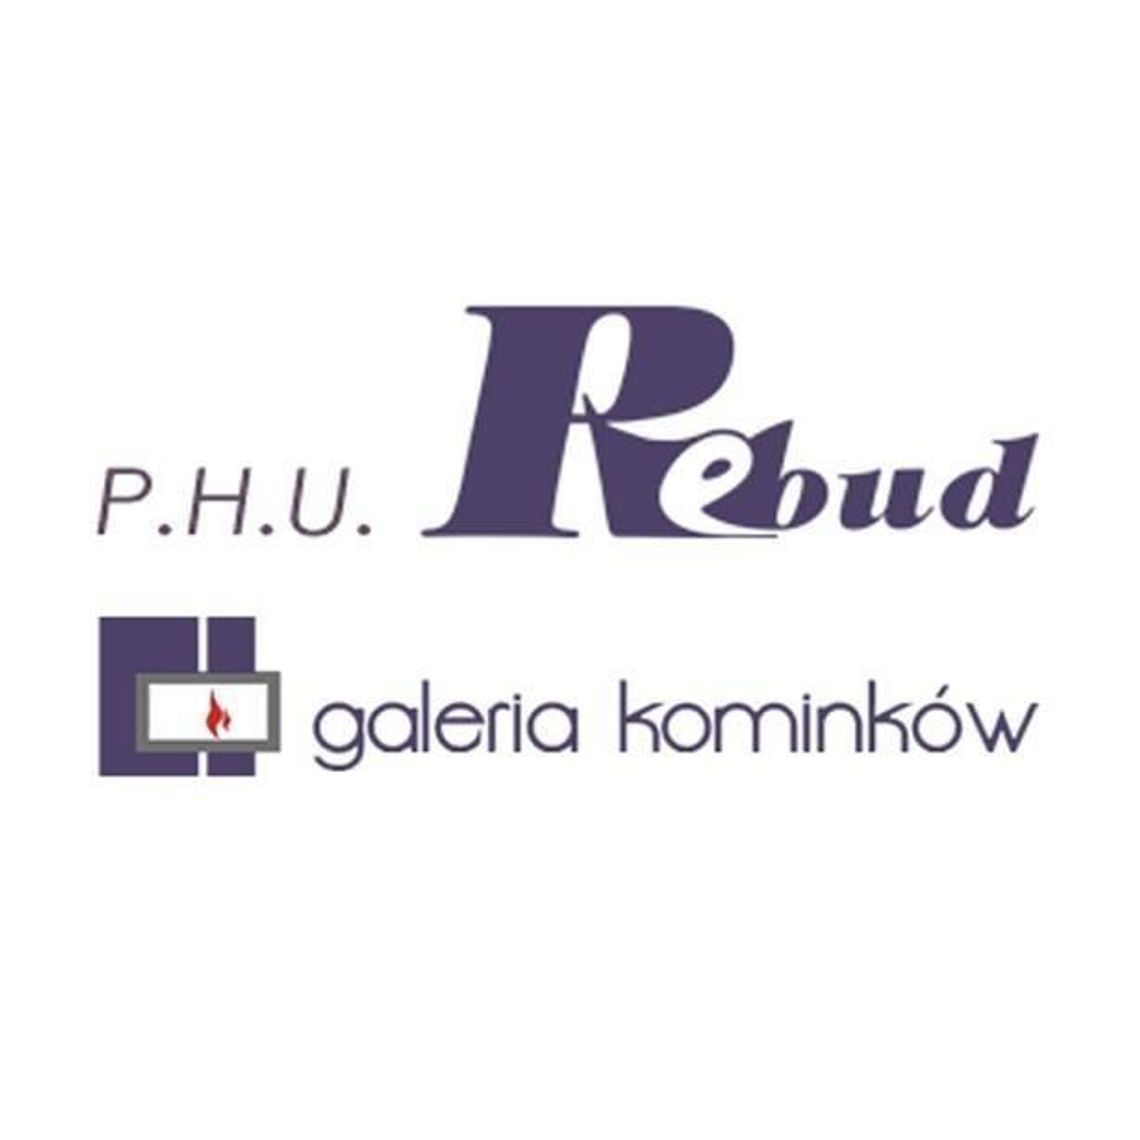 P. H. U. REBUD Galeria Kominków